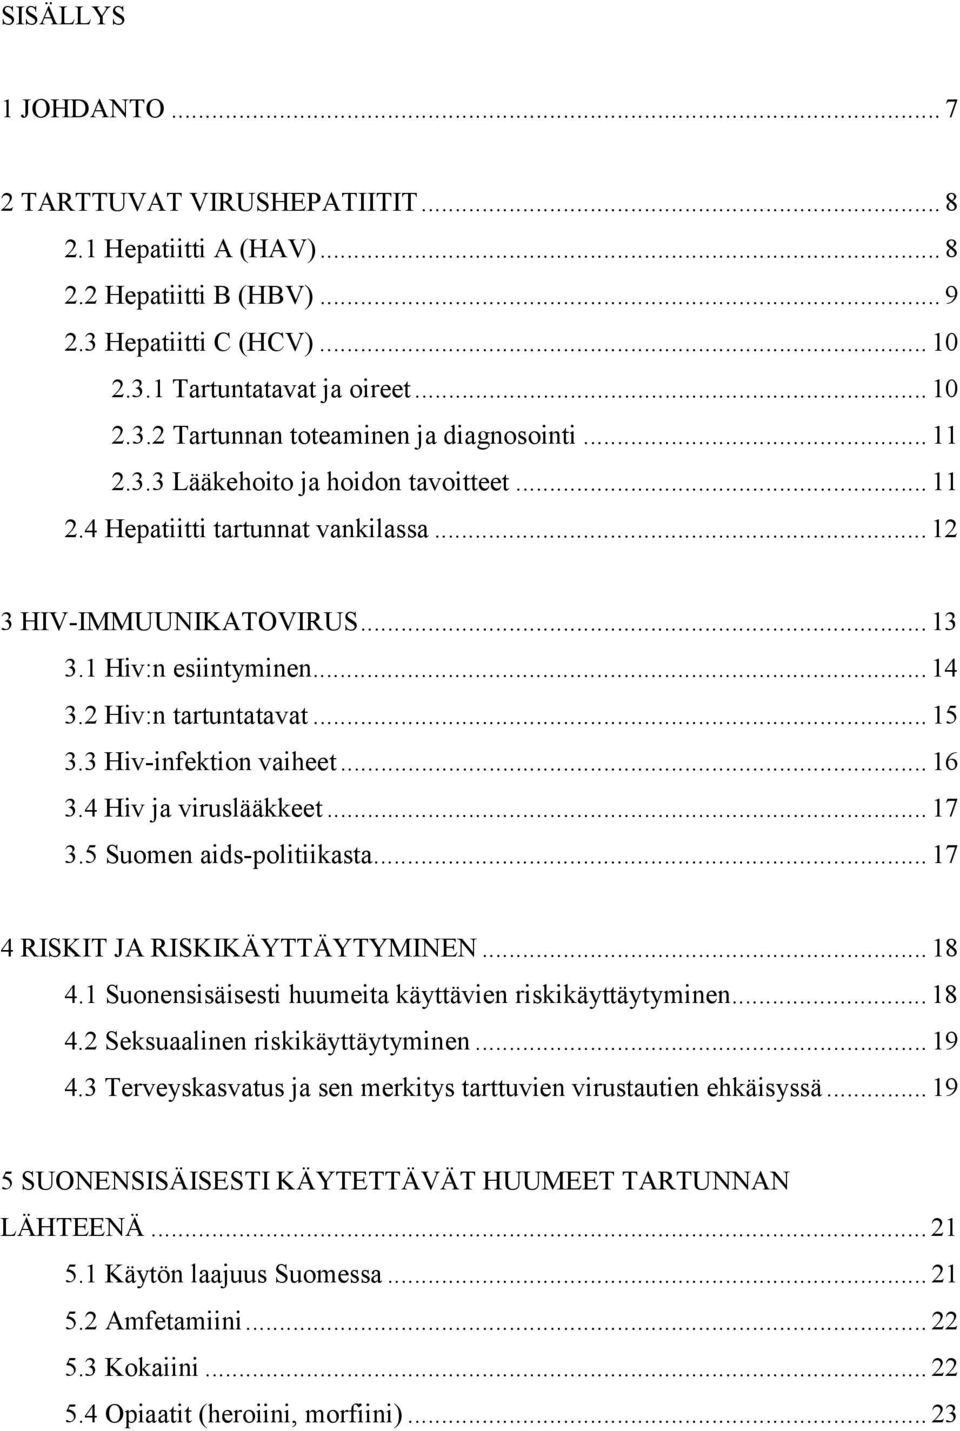 3 Hiv-infektion vaiheet... 16 3.4 Hiv ja viruslääkkeet... 17 3.5 Suomen aids-politiikasta... 17 4 RISKIT JA RISKIKÄYTTÄYTYMINEN... 18 4.1 Suonensisäisesti huumeita käyttävien riskikäyttäytyminen.